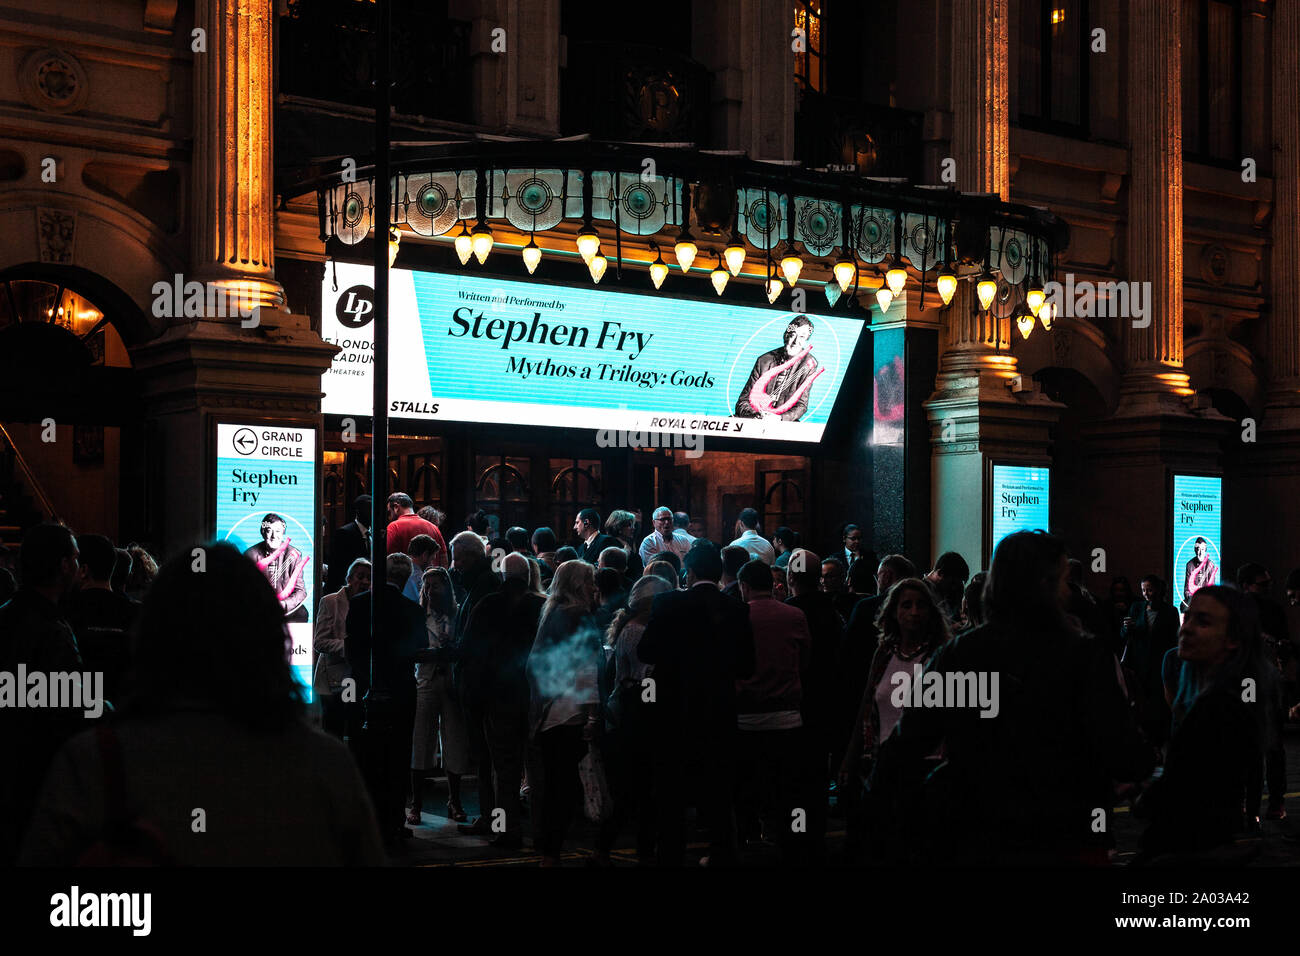 Une foule attend à l'entrée du théâtre London Palladium pour voir Mythos a Trilogy by Stephen Fry, Argyll Street, Soho, Londres, Angleterre, Royaume-Uni. Banque D'Images